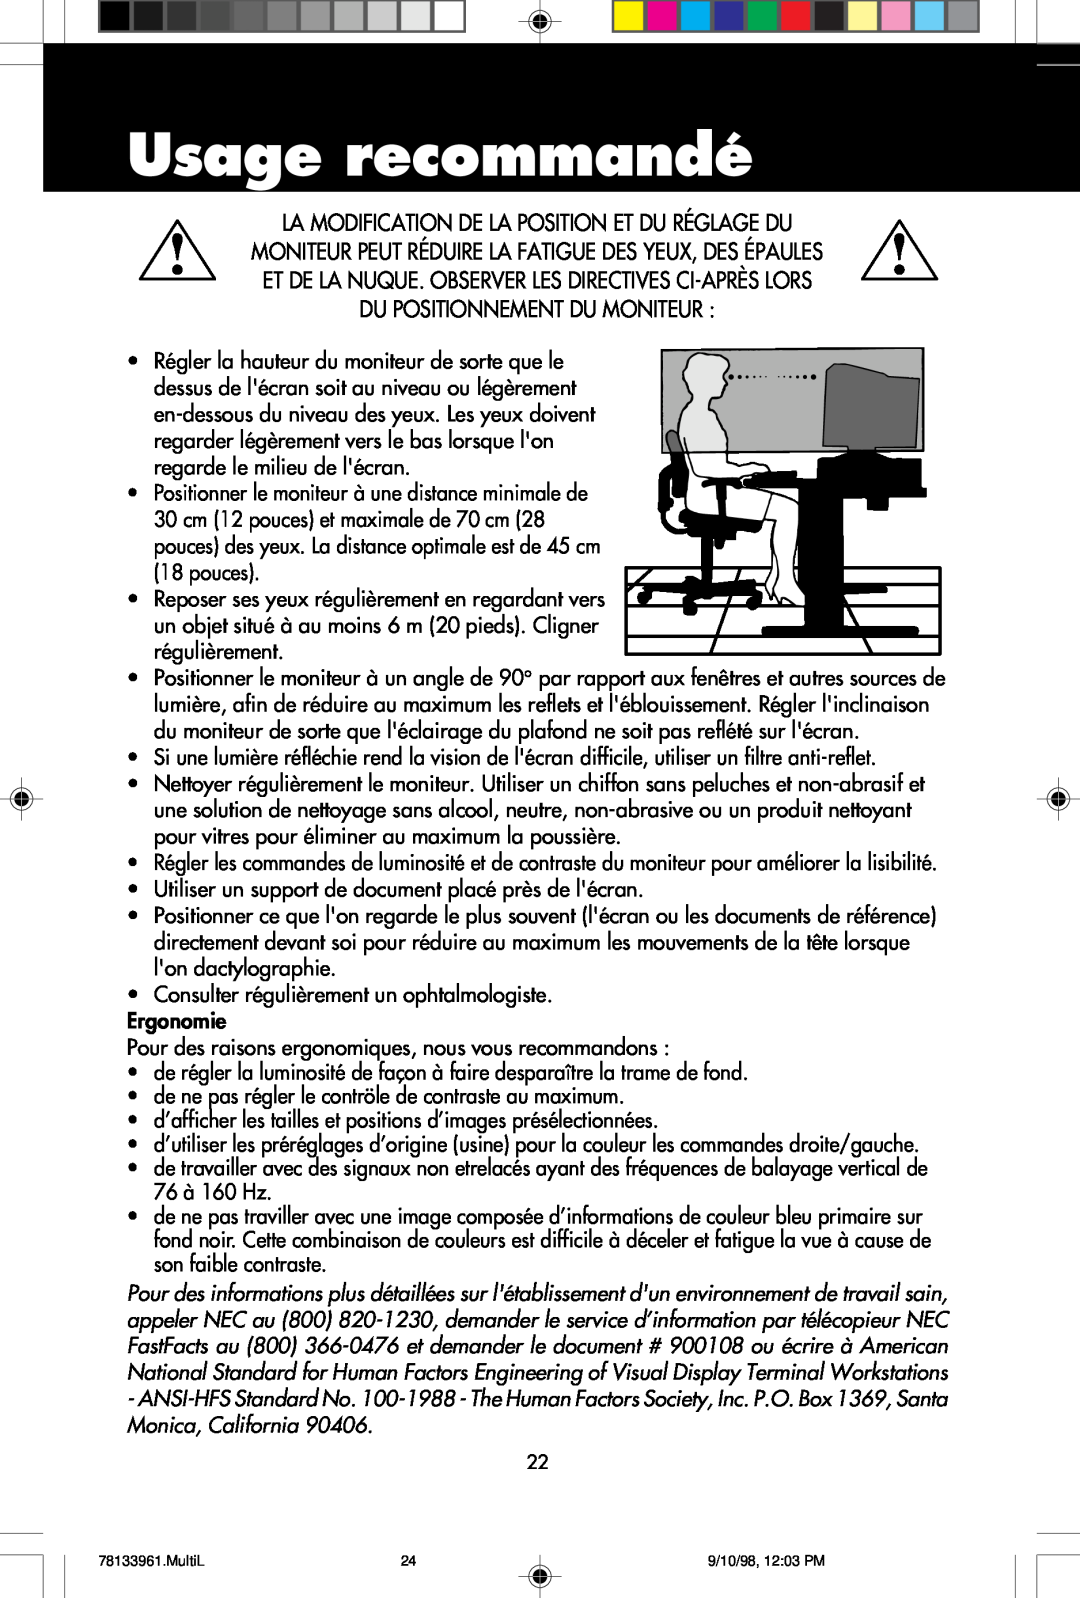 NEC A900 user manual Usage recommandé, La Modification De La Position Et Du Réglage Du, Du Positionnement Du Moniteur 